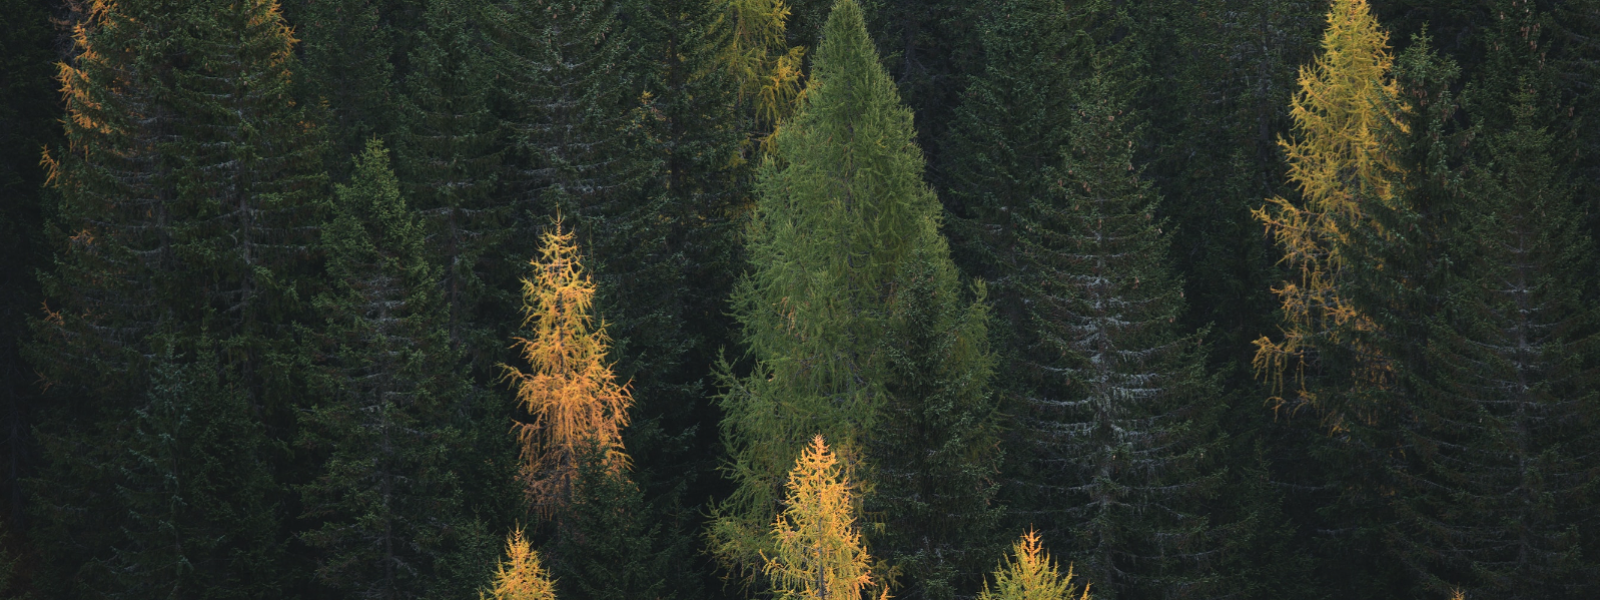 EESTI METSAMEISTER OÜ - Eesti metsanduse uus põlvkond! Kehtestame uusi jätkusuutliku metsamajandamise standardeid, olle...